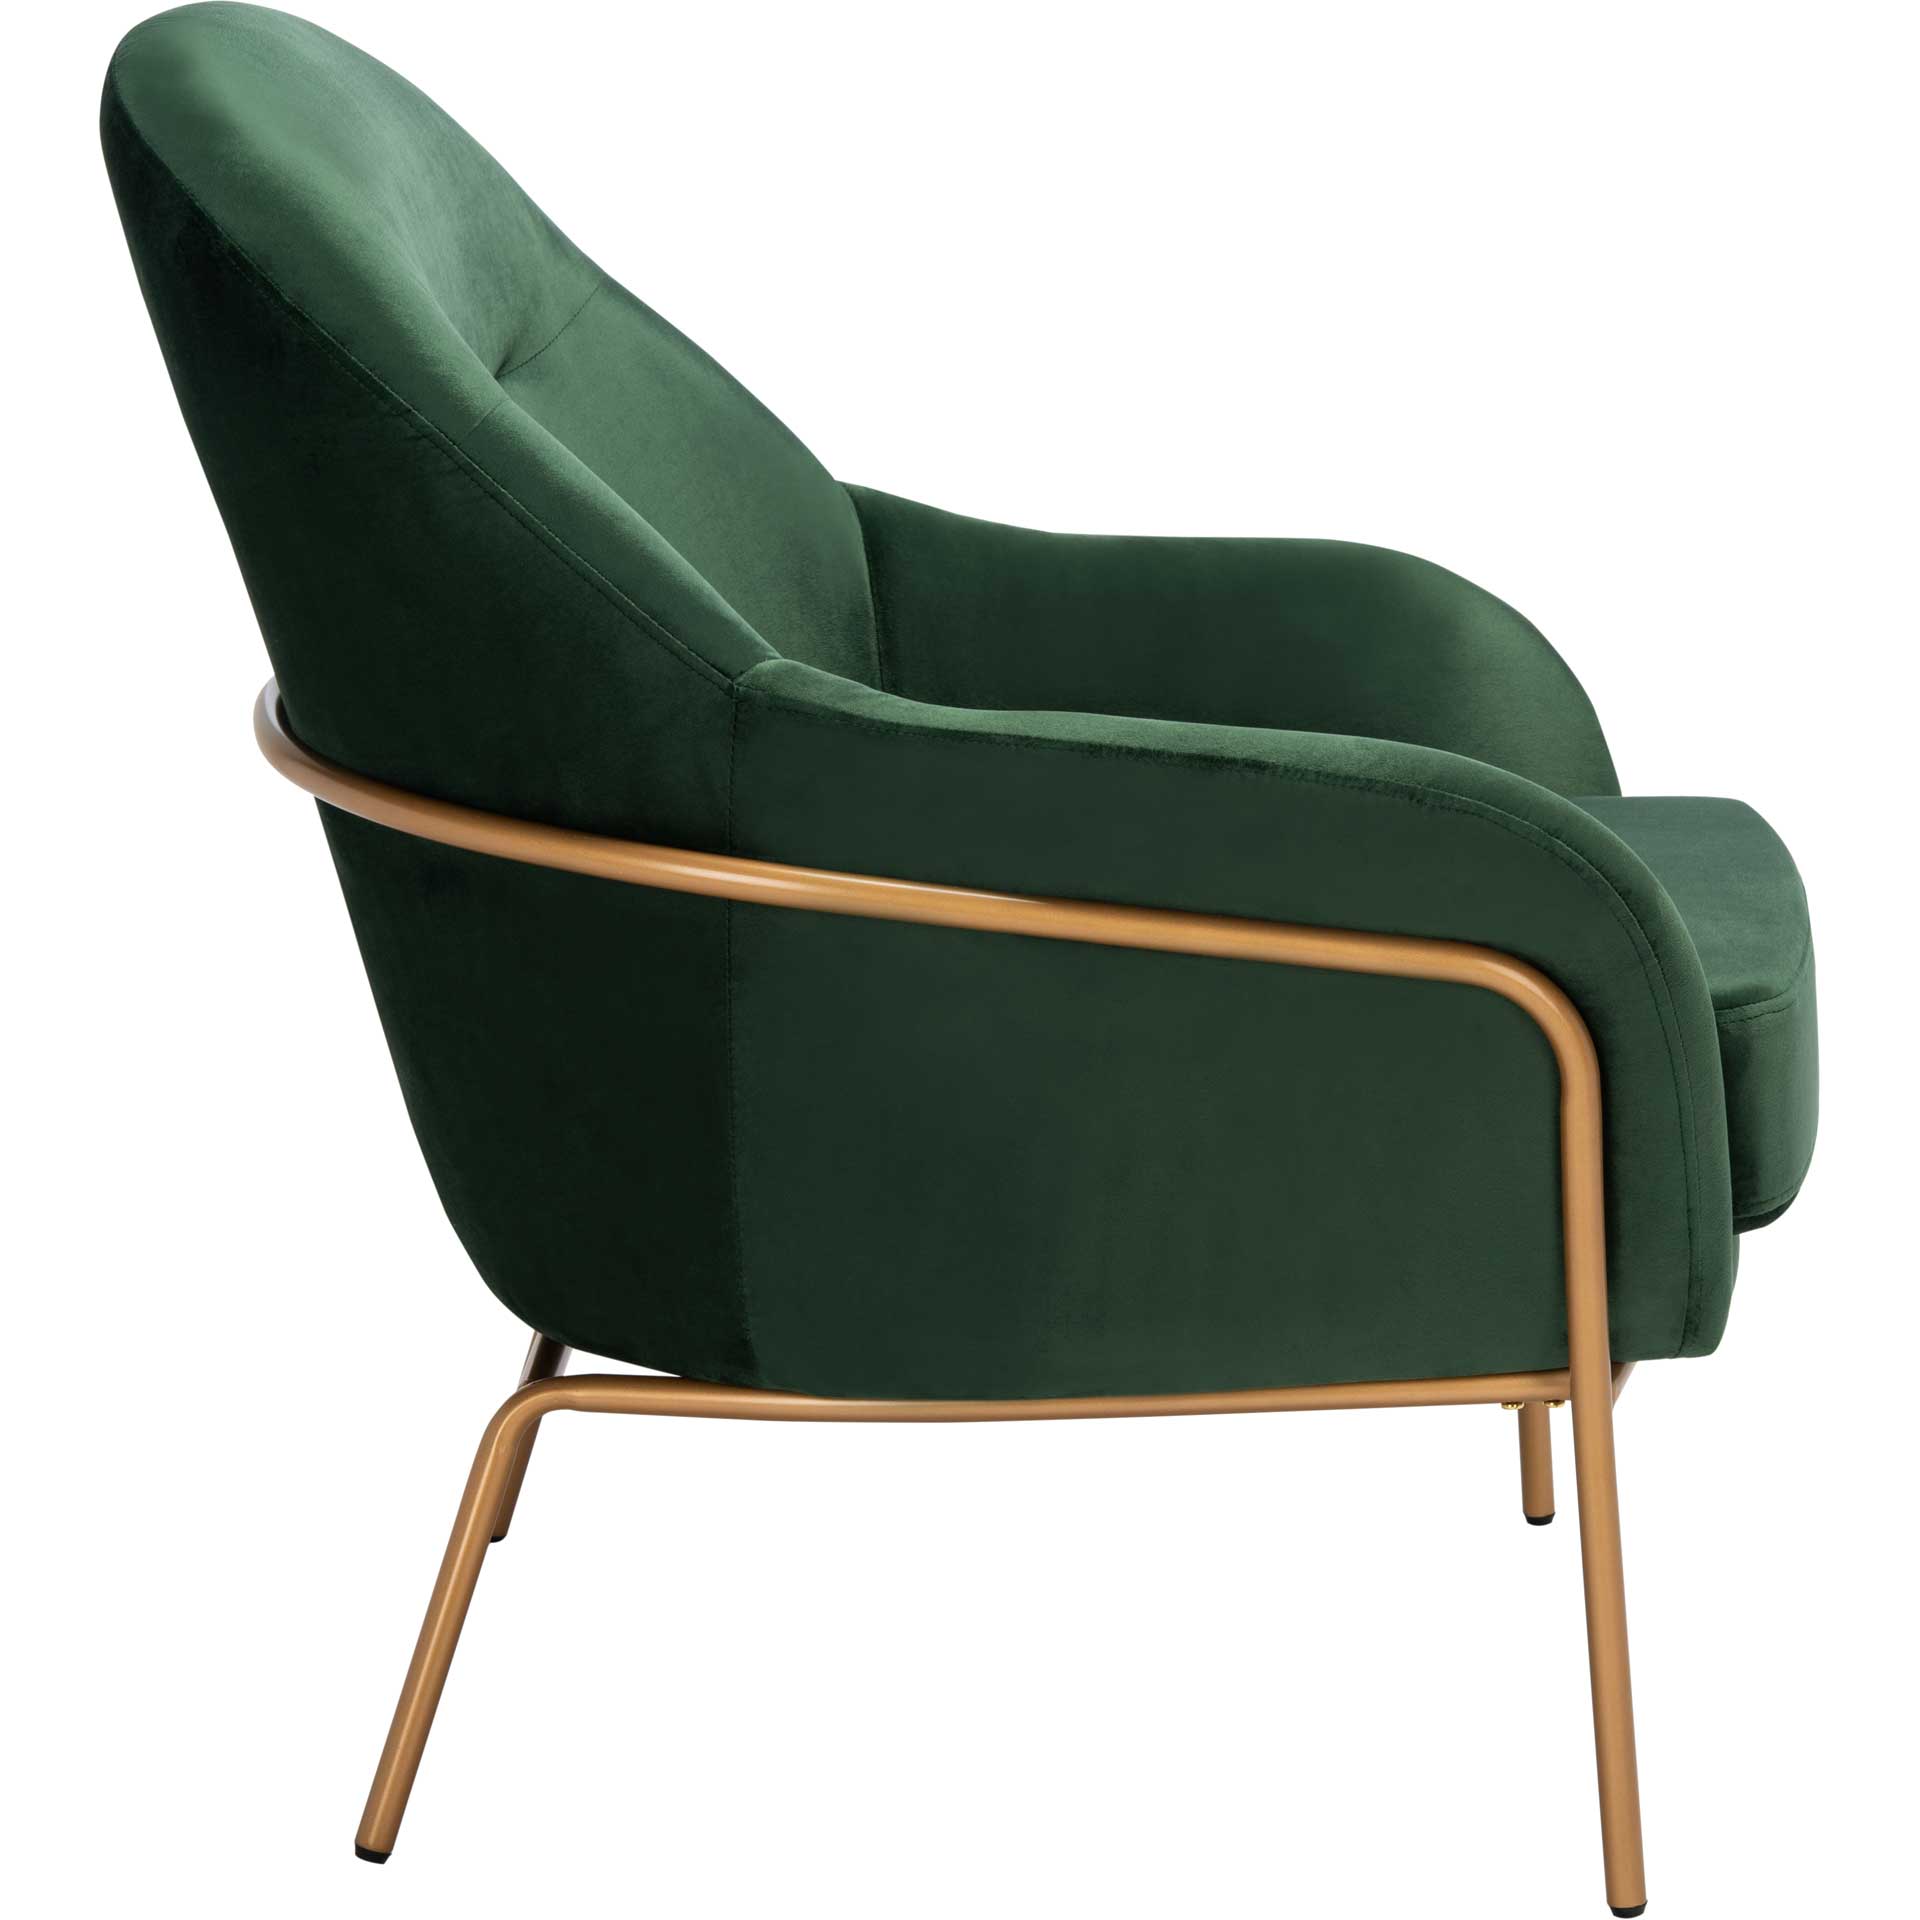 Eldon Velvet Accent Chair Malachite Green/Gold